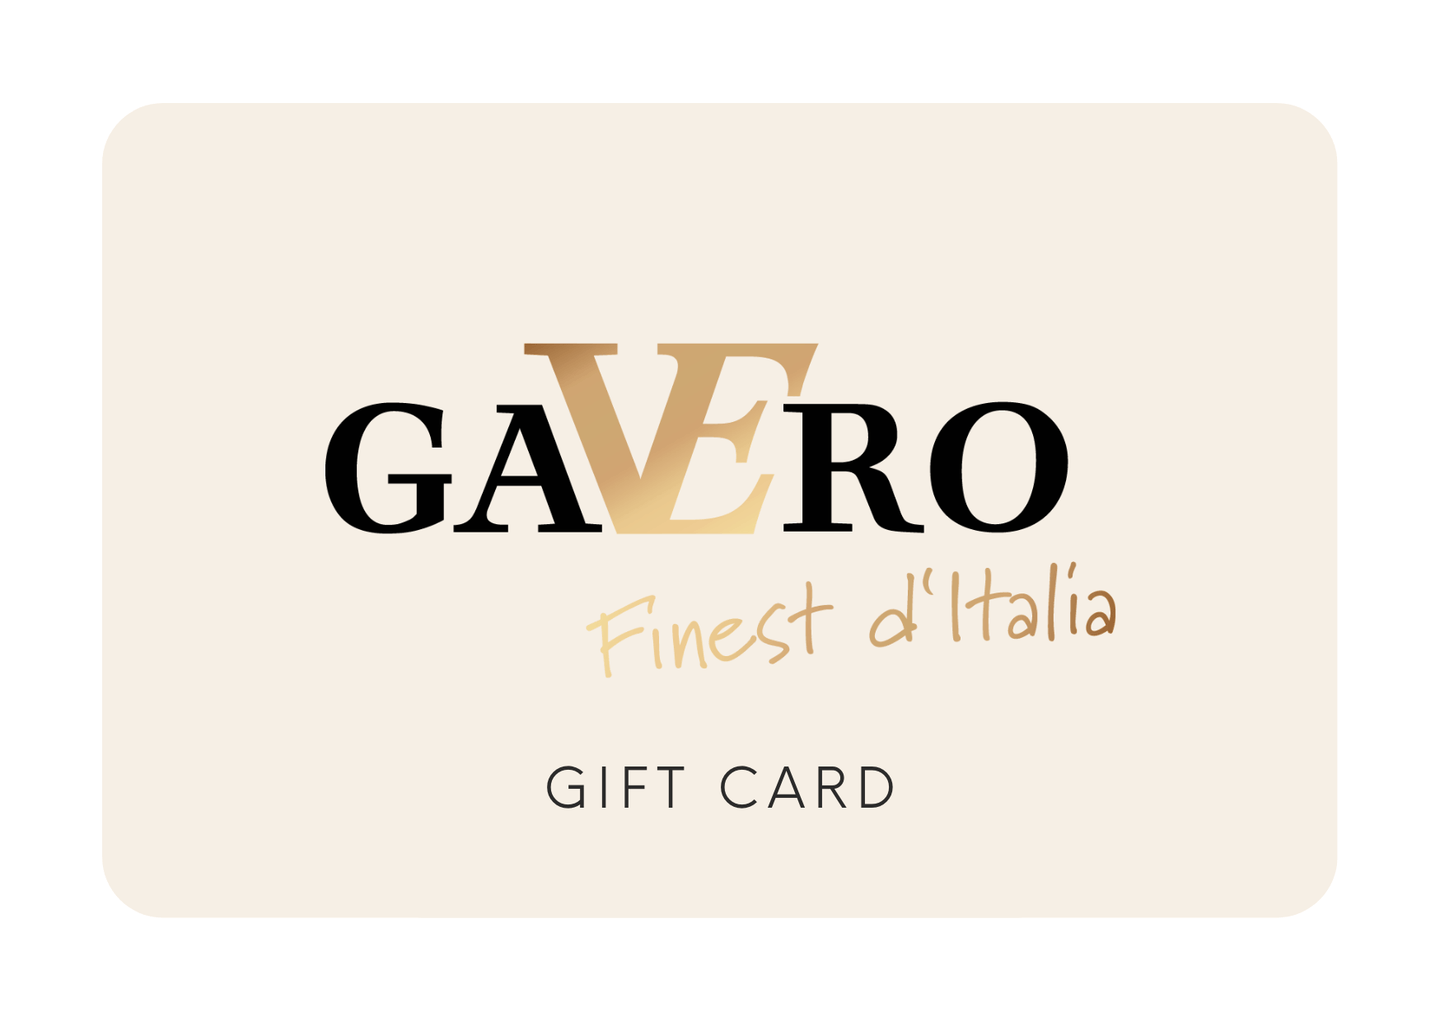 Gavero gift certificate print@home - Gavero